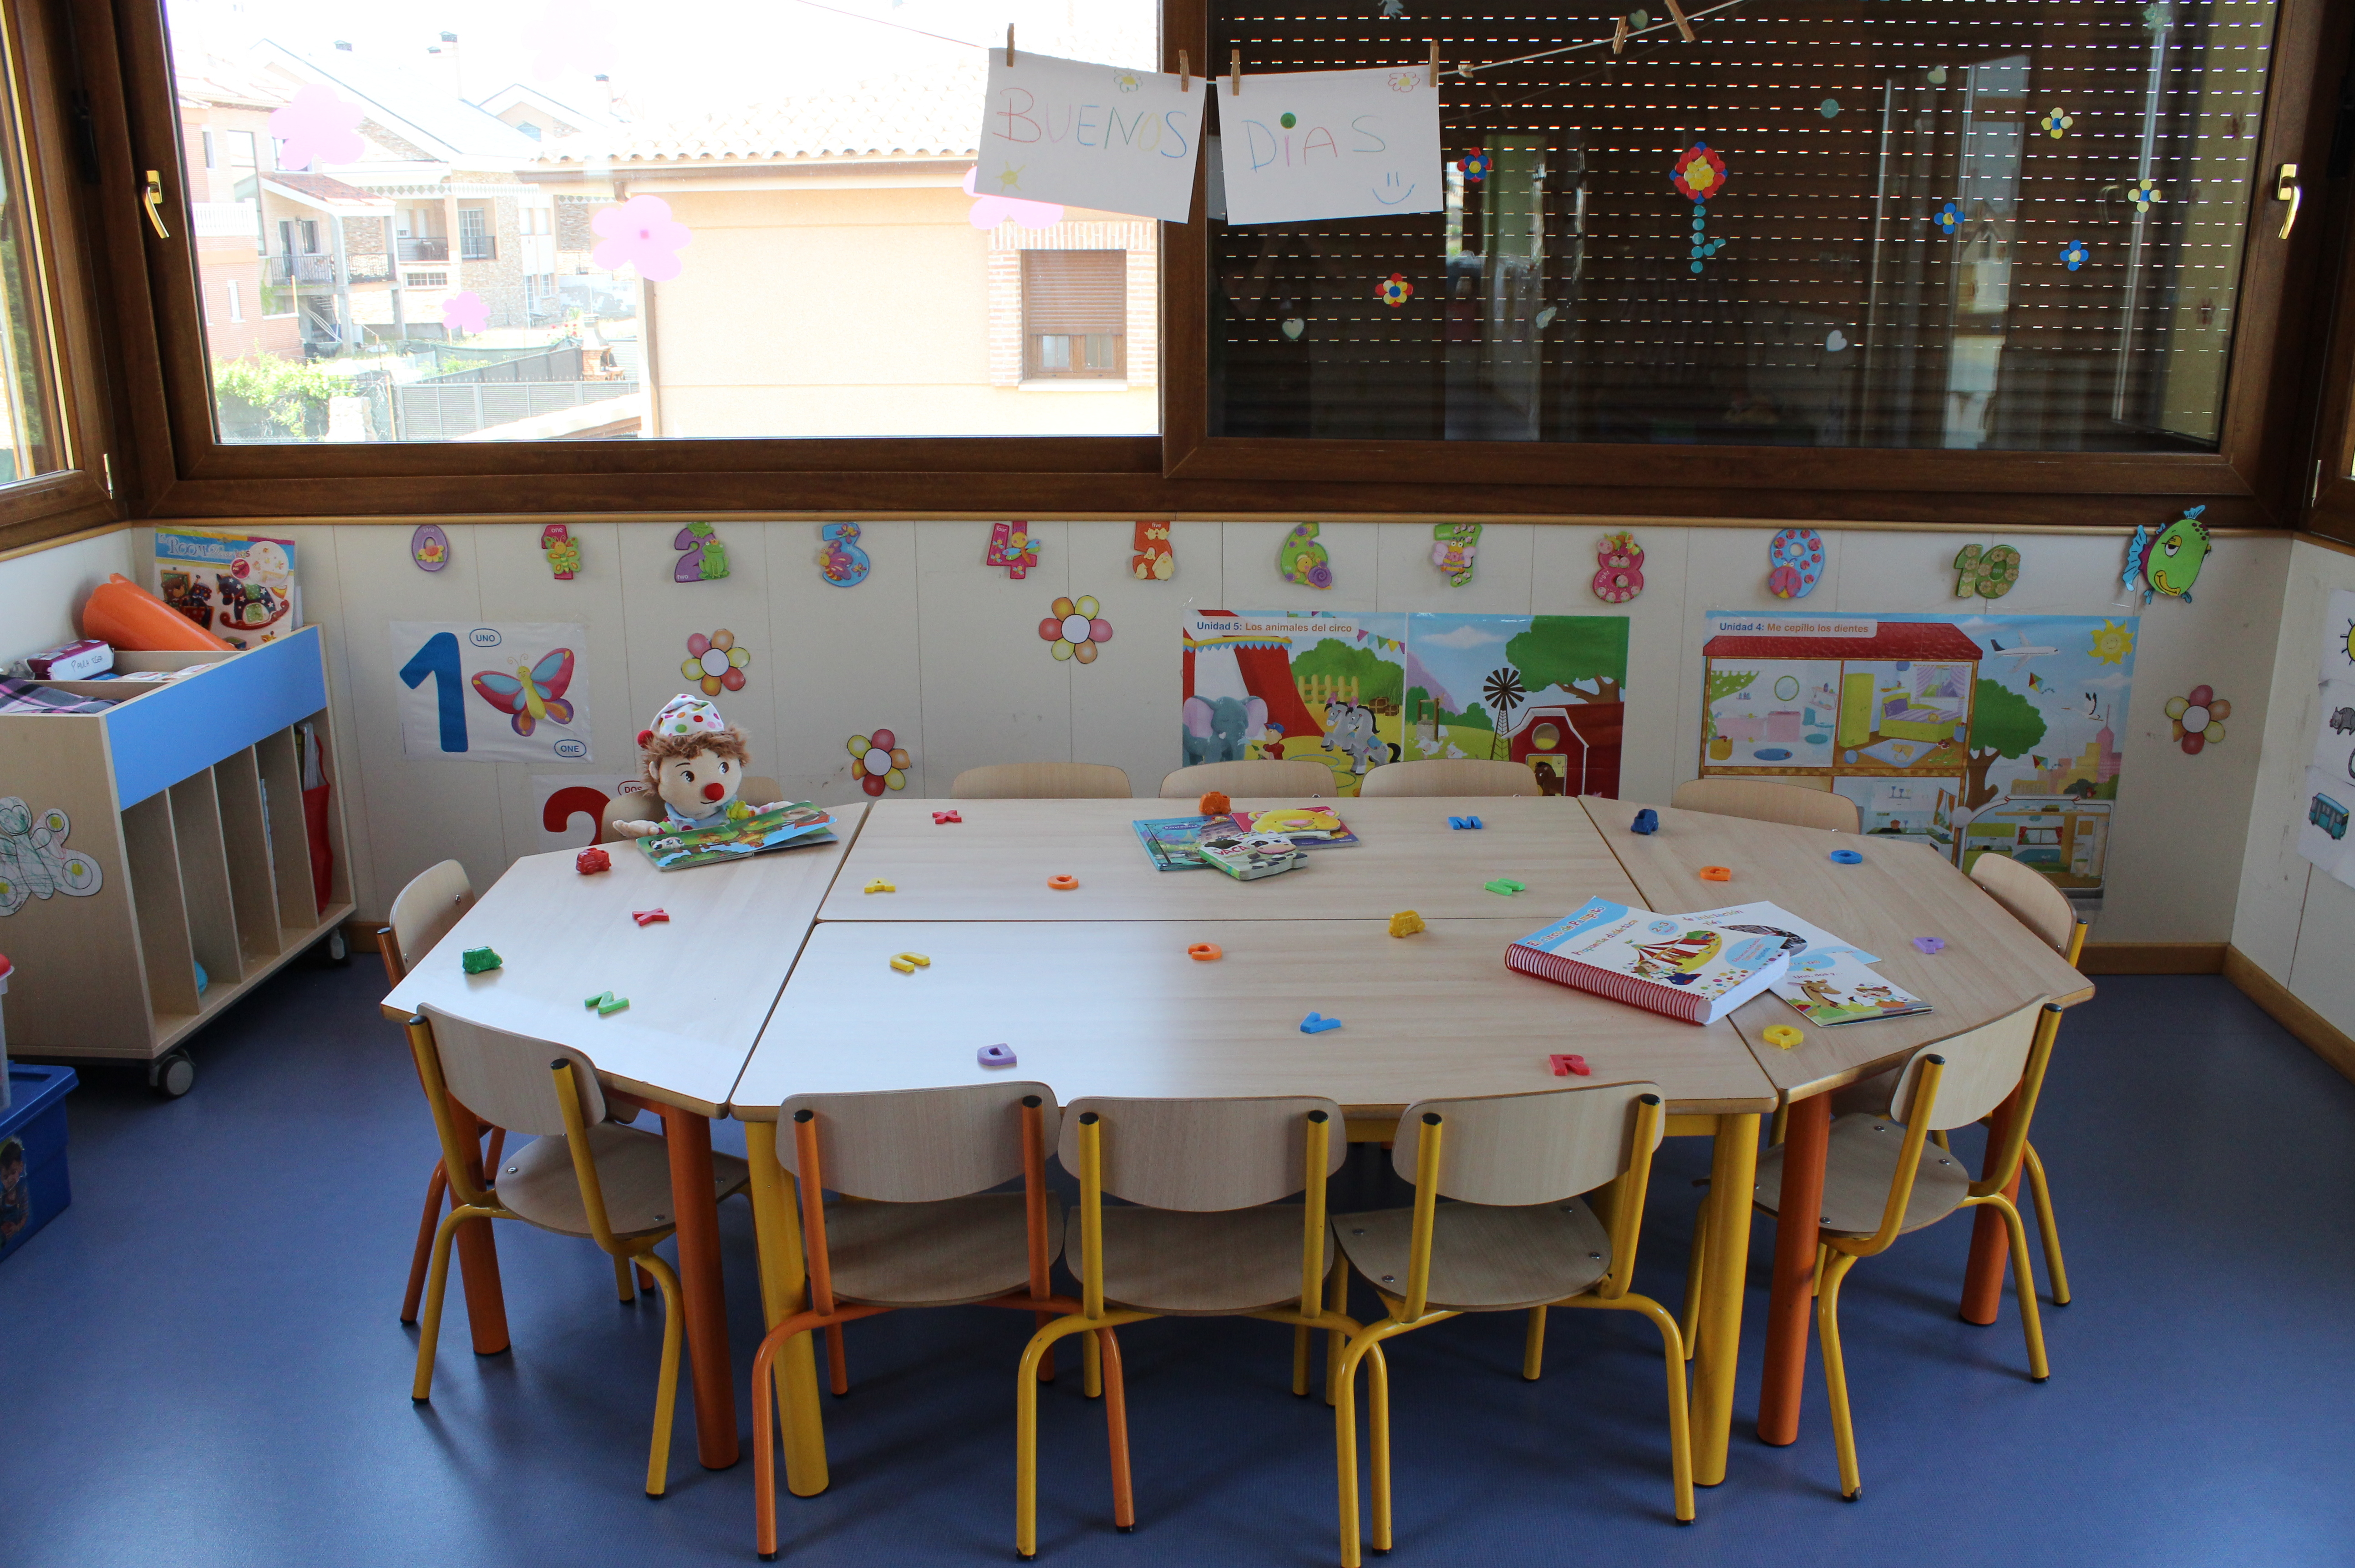 Foto 35 de Guarderías y Escuelas infantiles en Arroyomolinos | Guardería Los Castillos